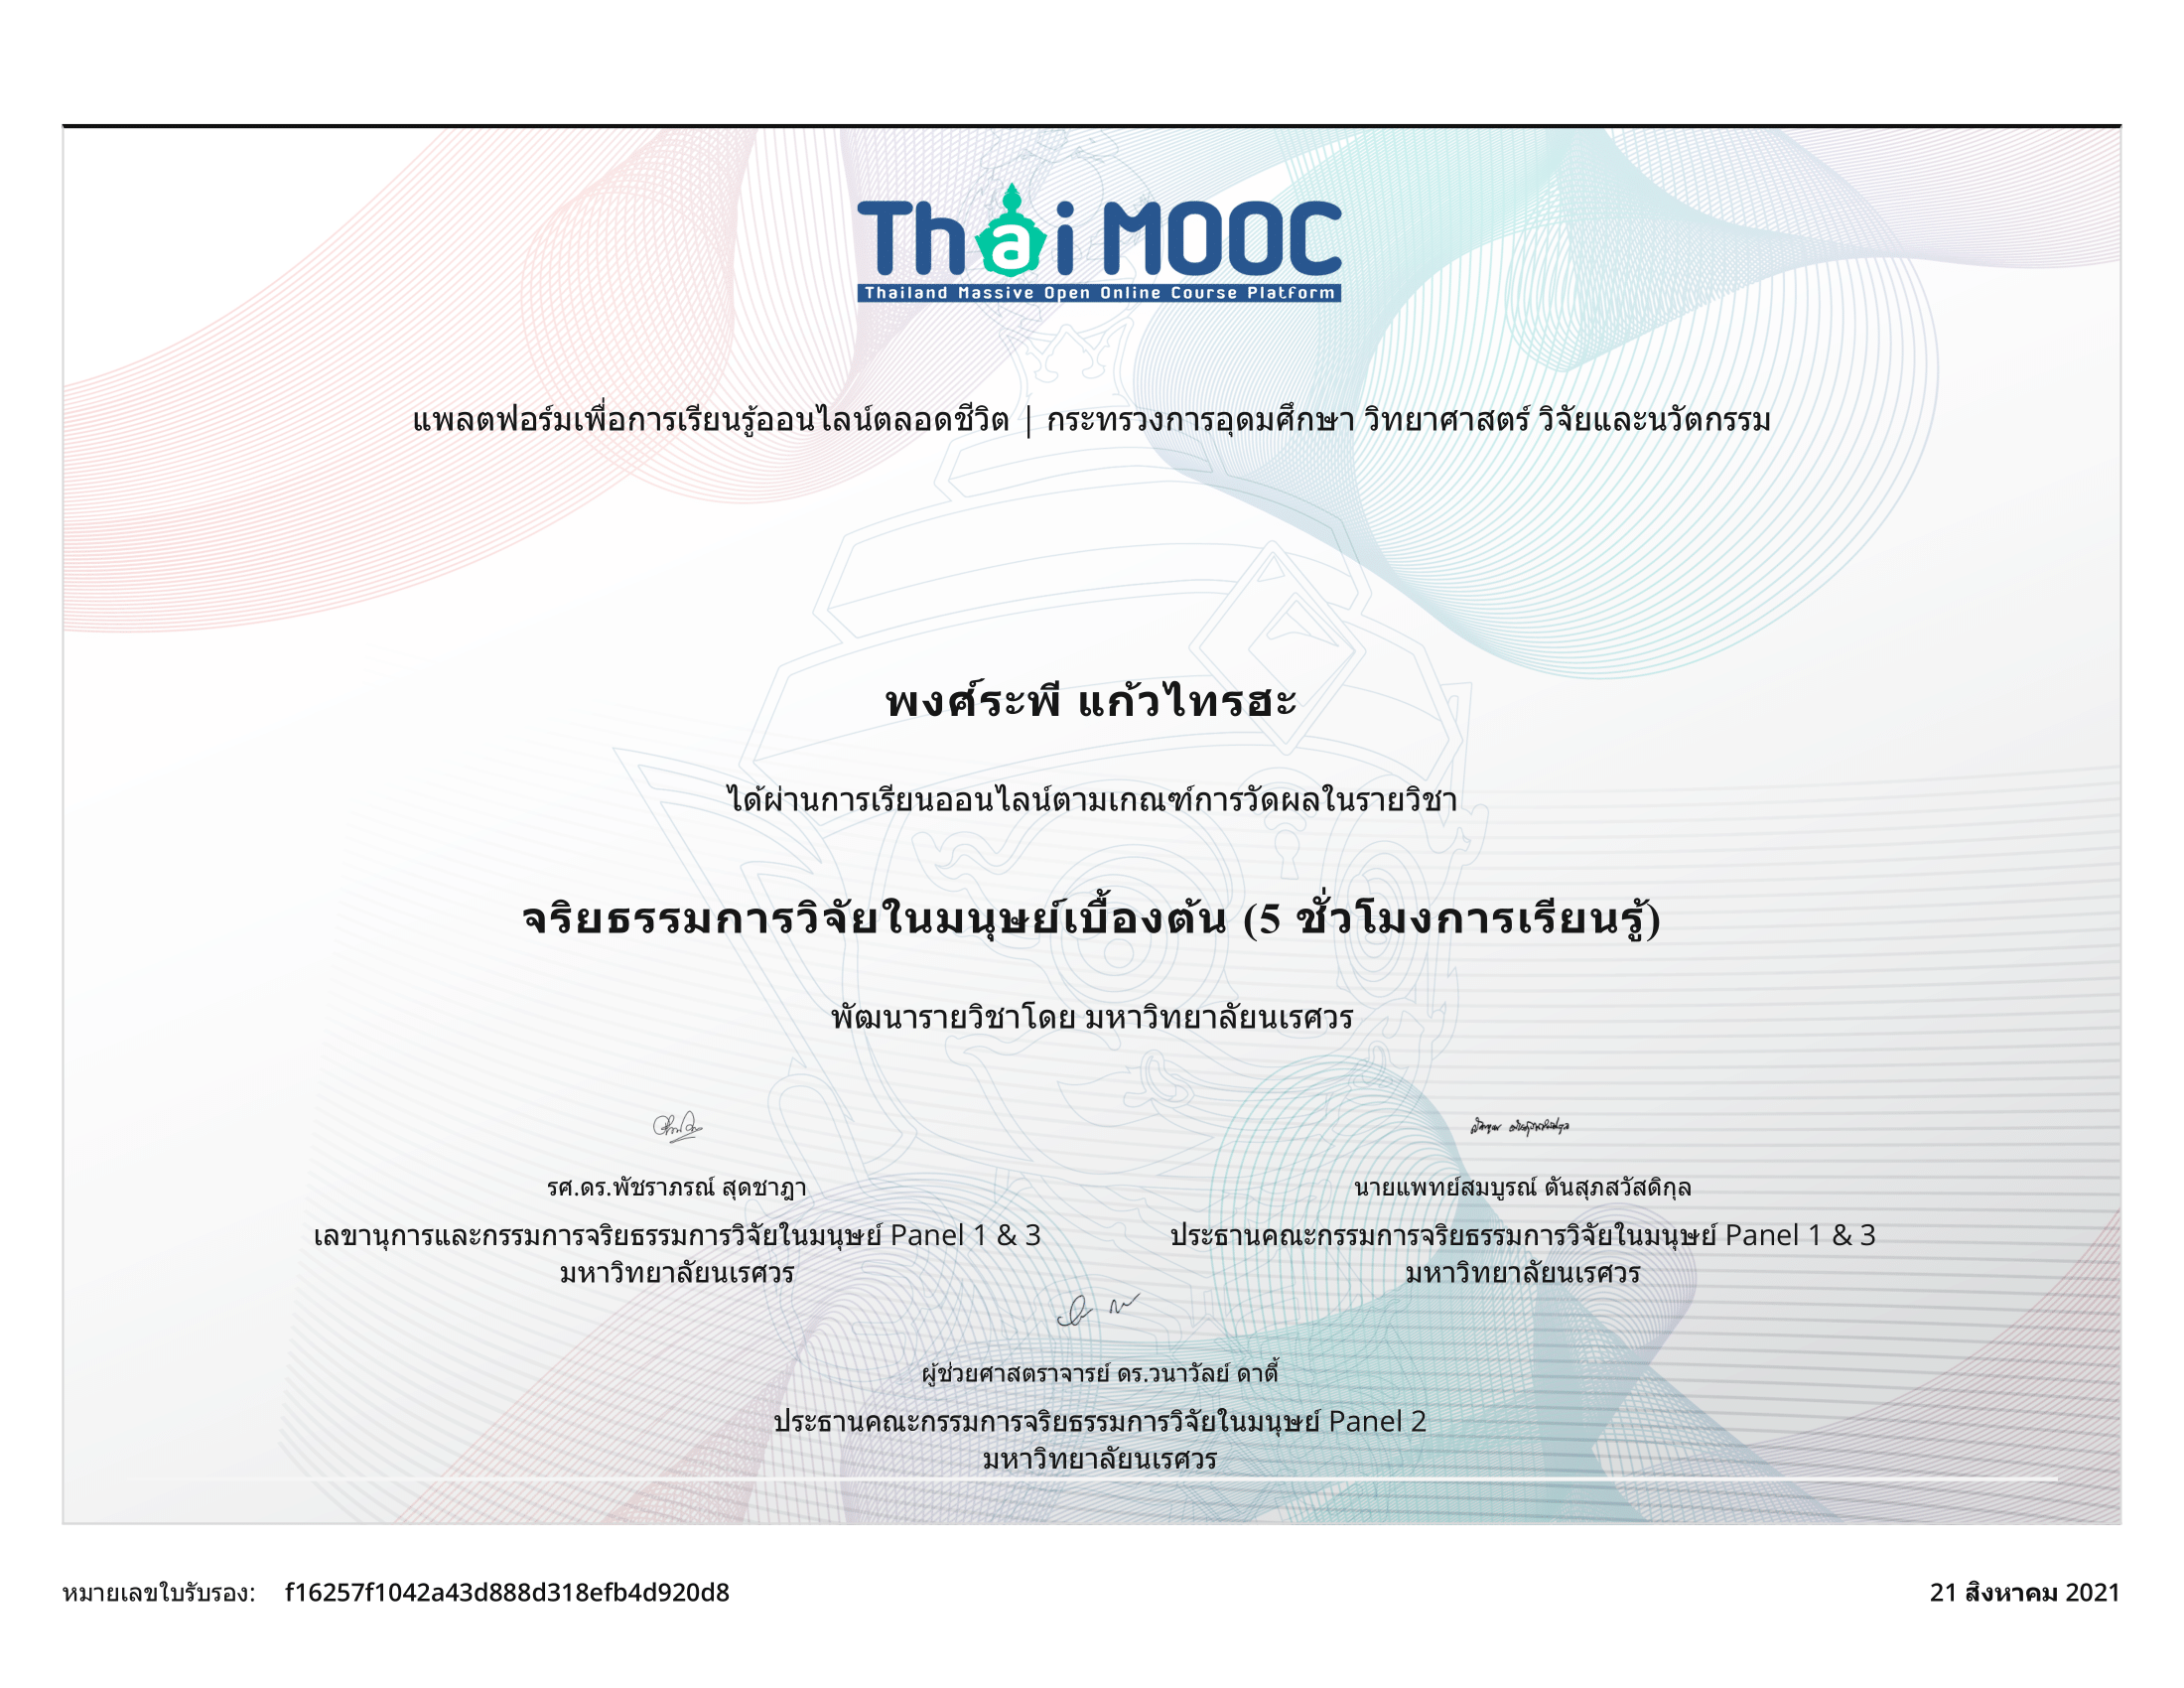 ThaiMOOC certificate